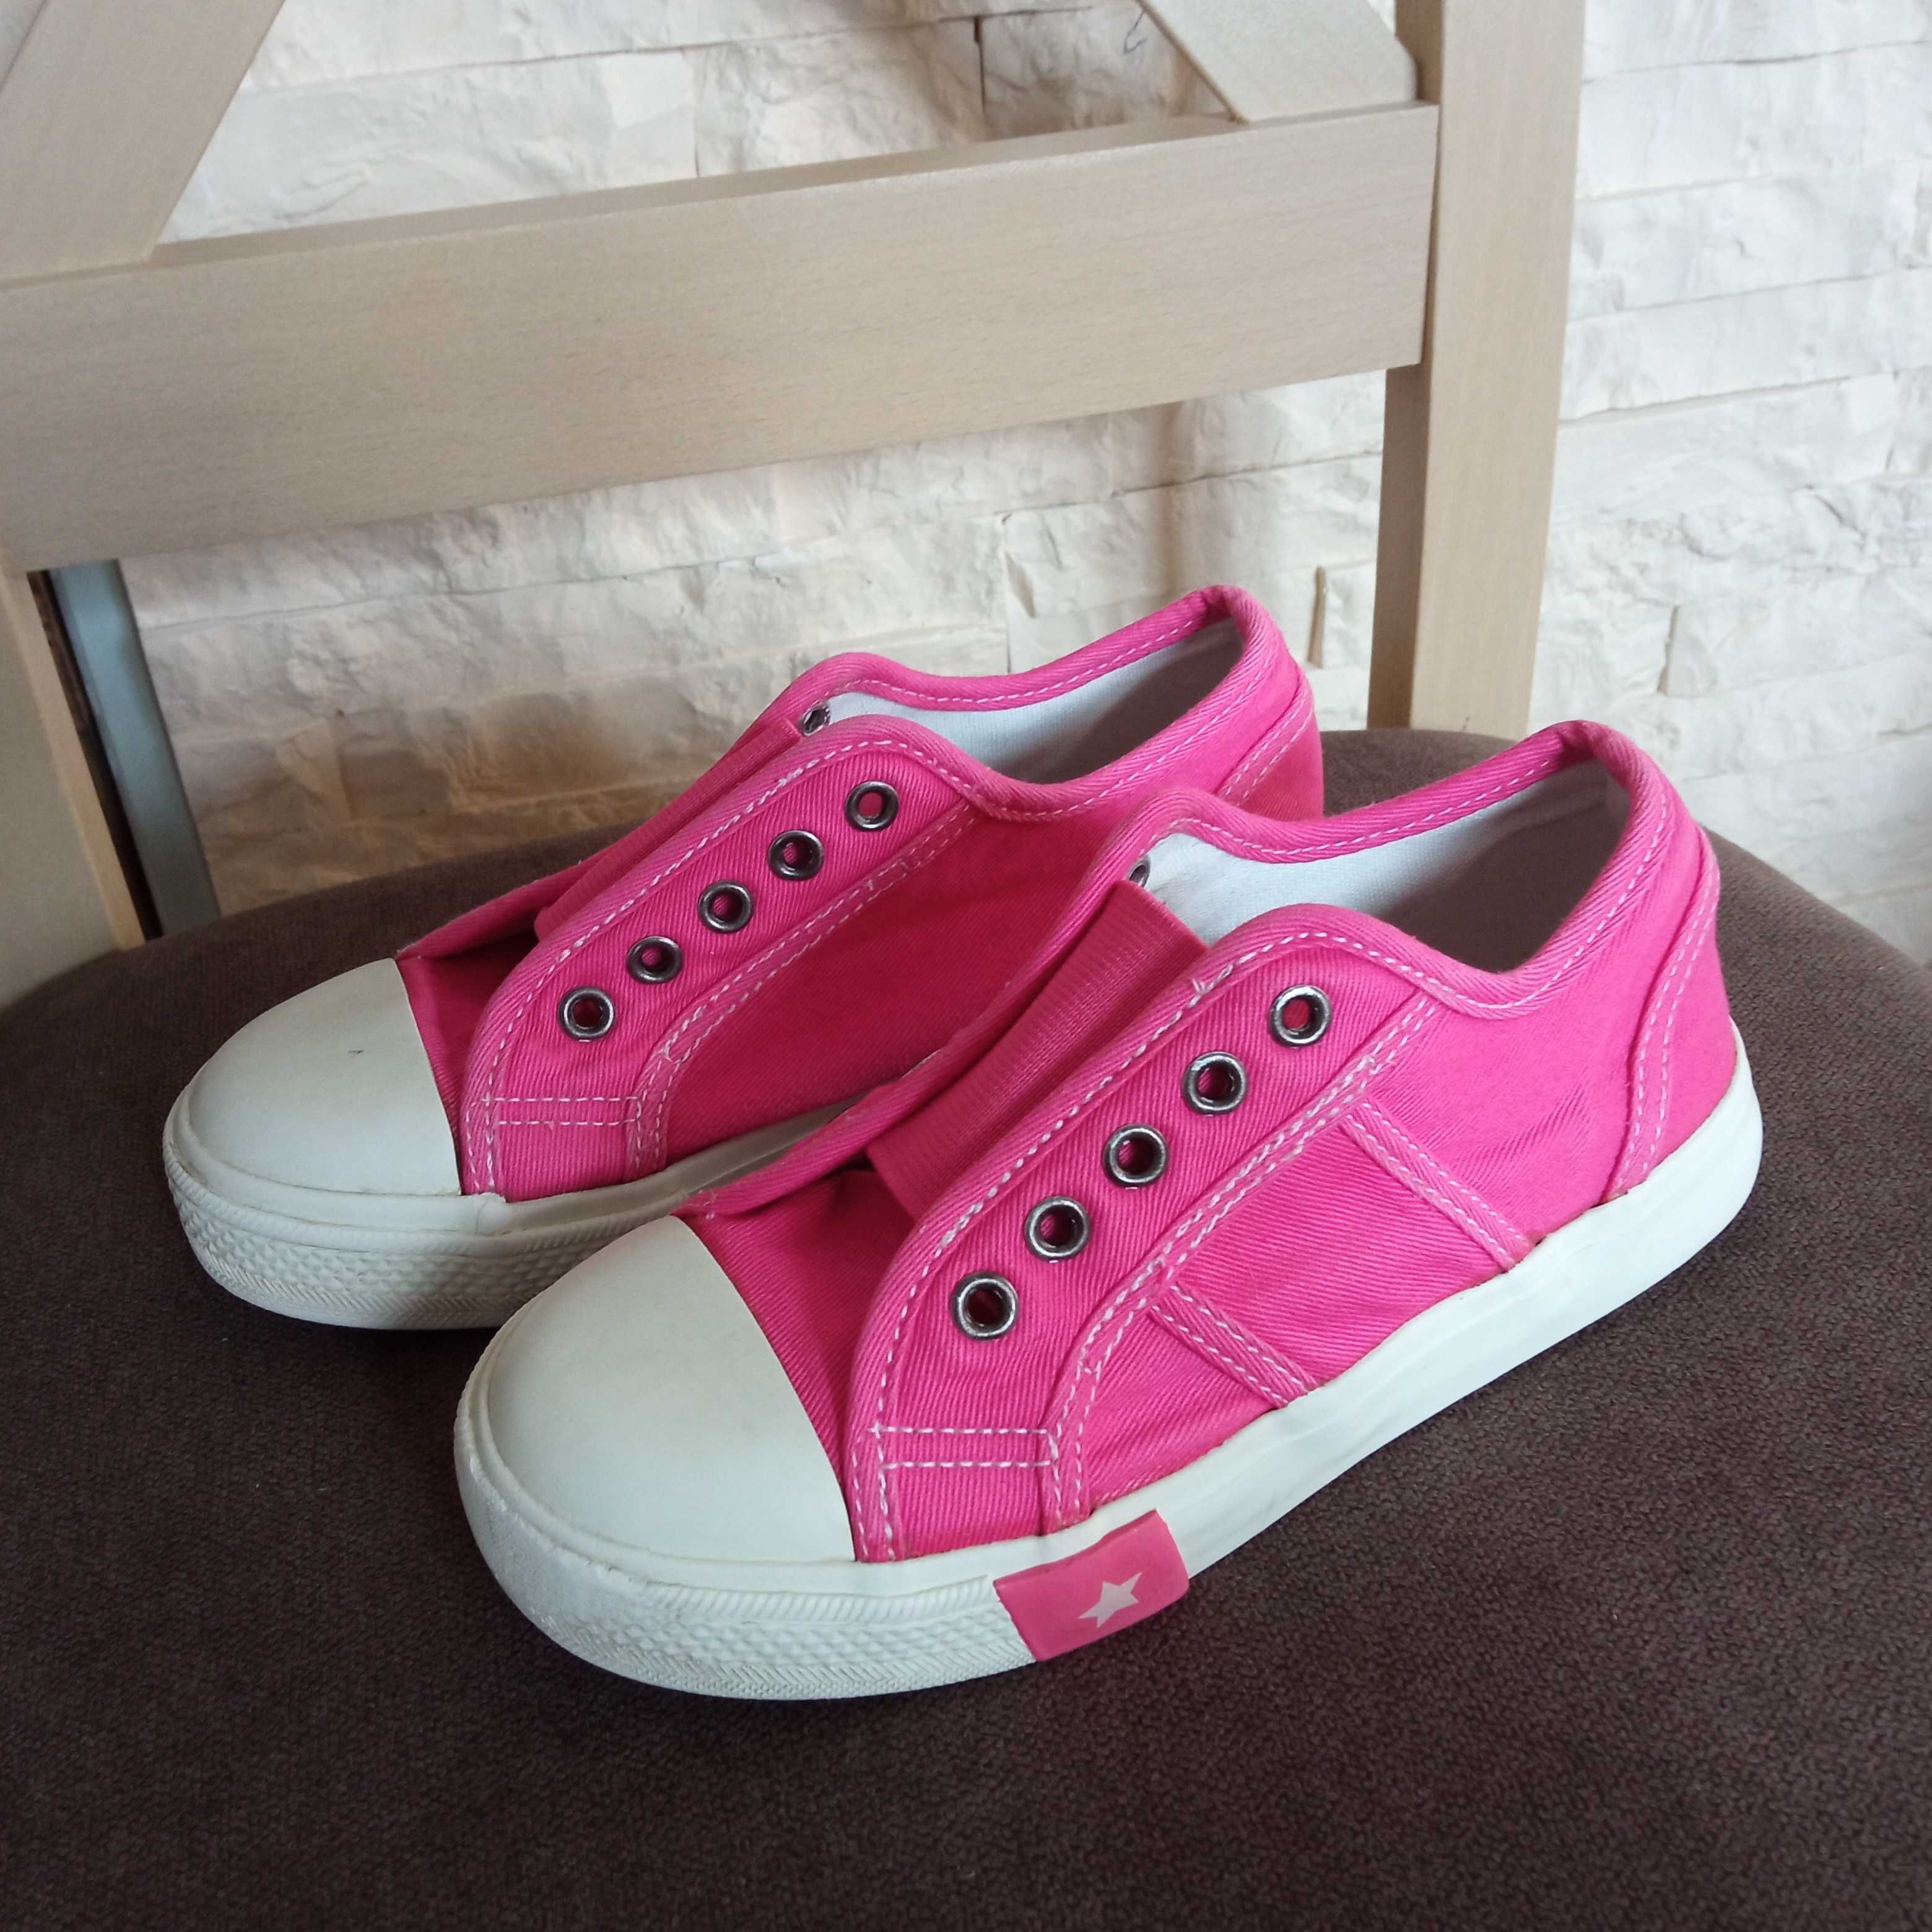 Trampki wsuwane slip on 28 tenisówki różowe John Lewis buty dziewczęce